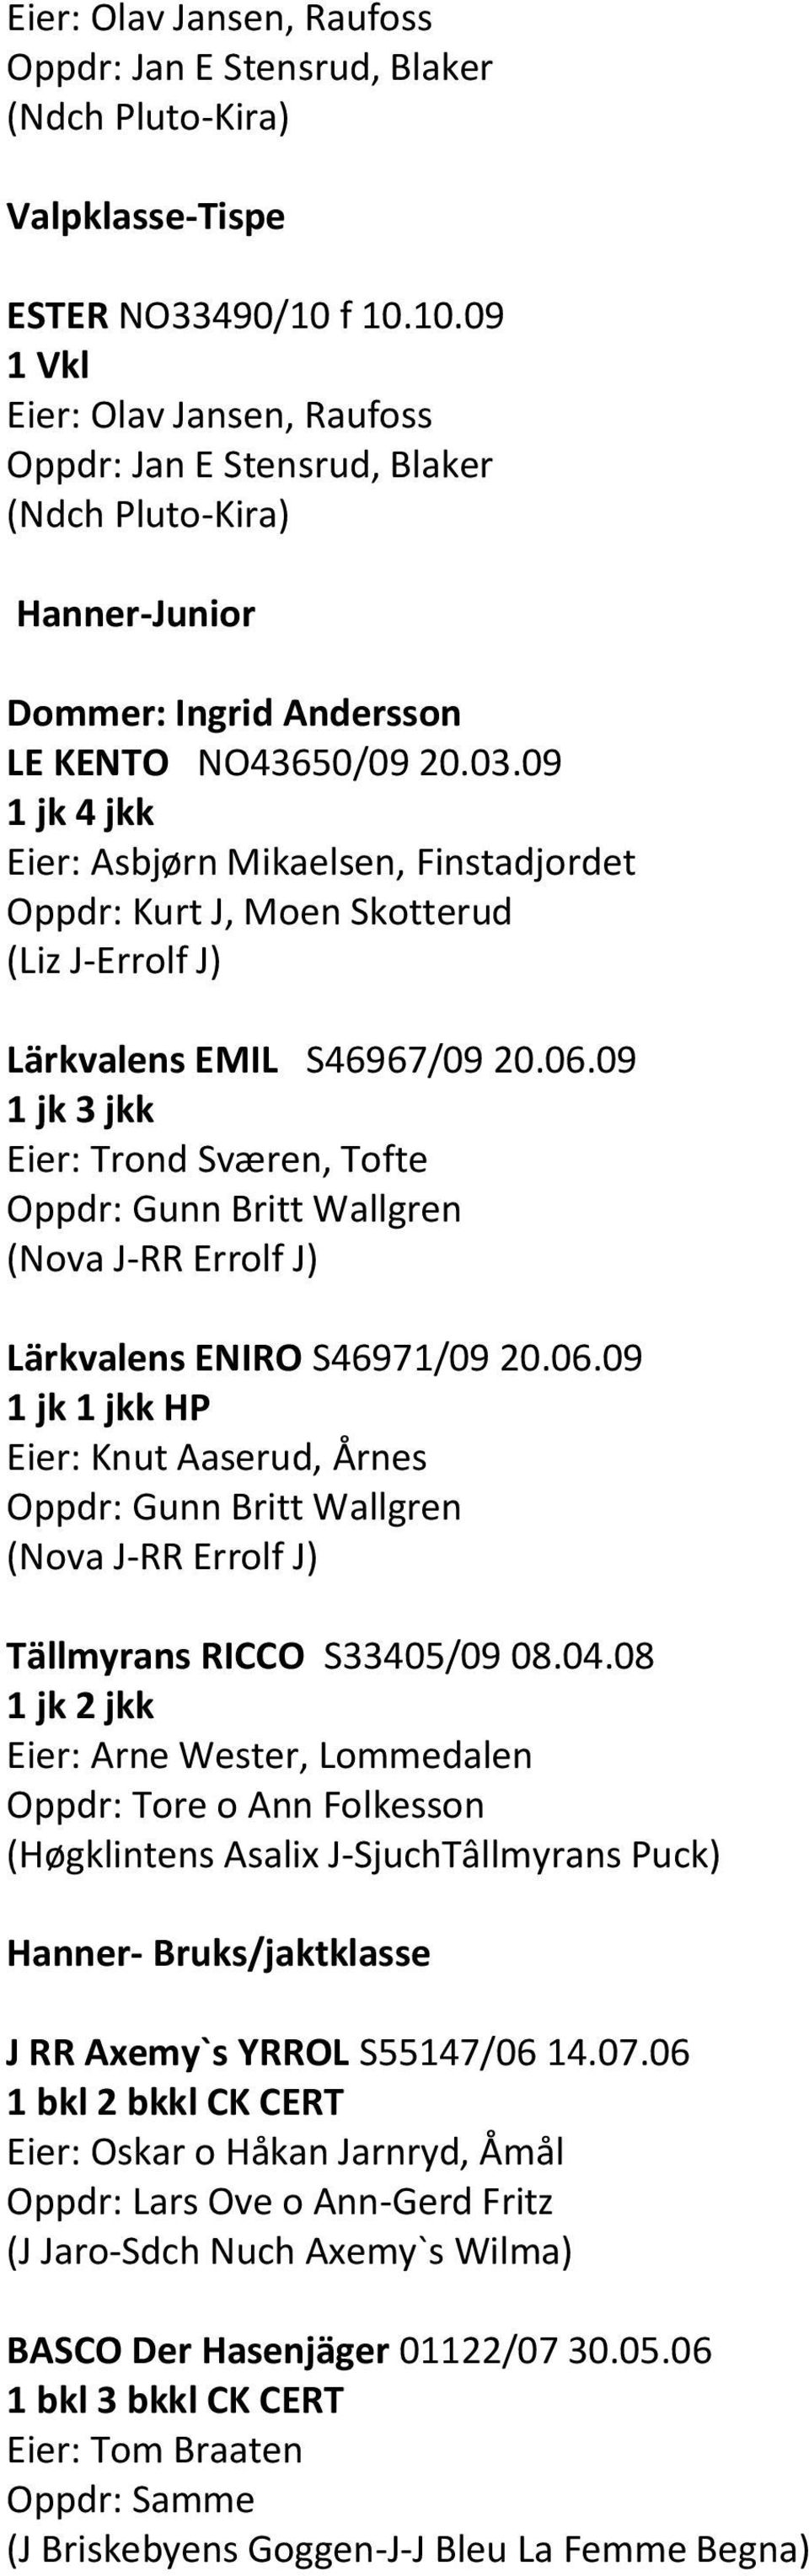 09 1 jk 4 jkk Eier: Asbjørn Mikaelsen, Finstadjordet Oppdr: Kurt J, Moen Skotterud (Liz J-Errolf J) Lärkvalens EMIL S46967/09 20.06.